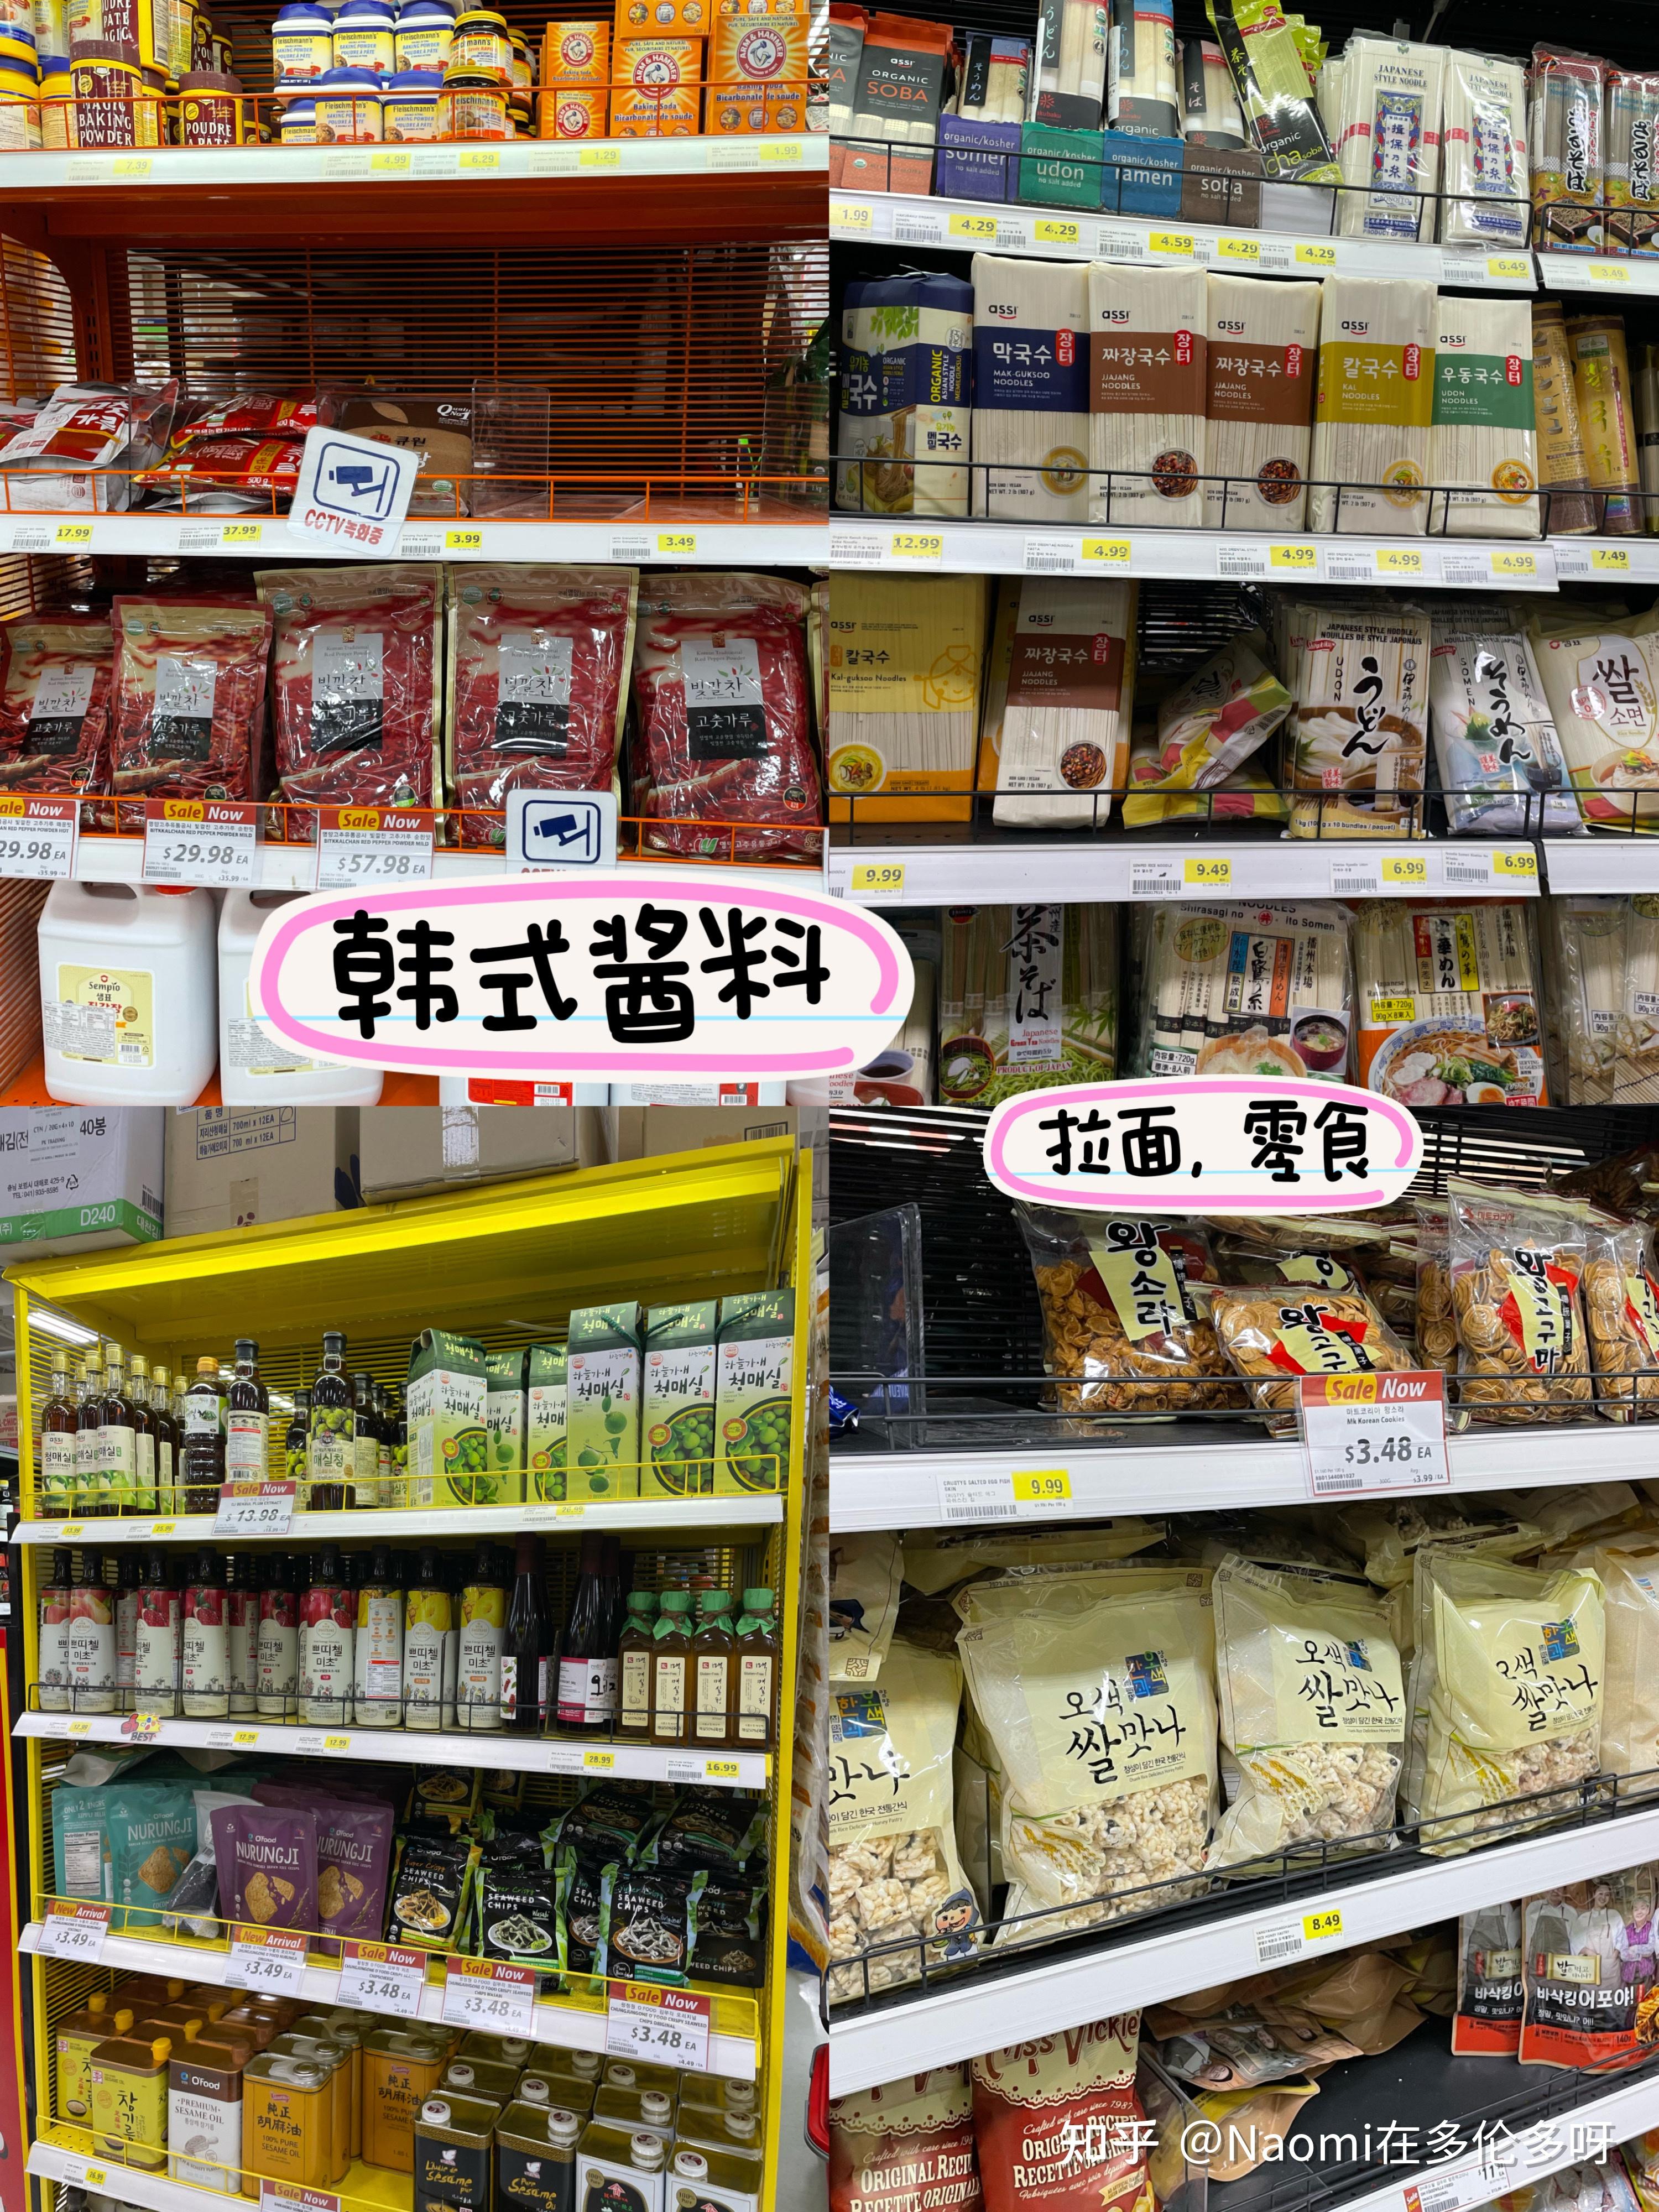 提醒一下大家：2019年在韩国超市大采买要自备购物袋了！ - KSD 韩星网 (生活)